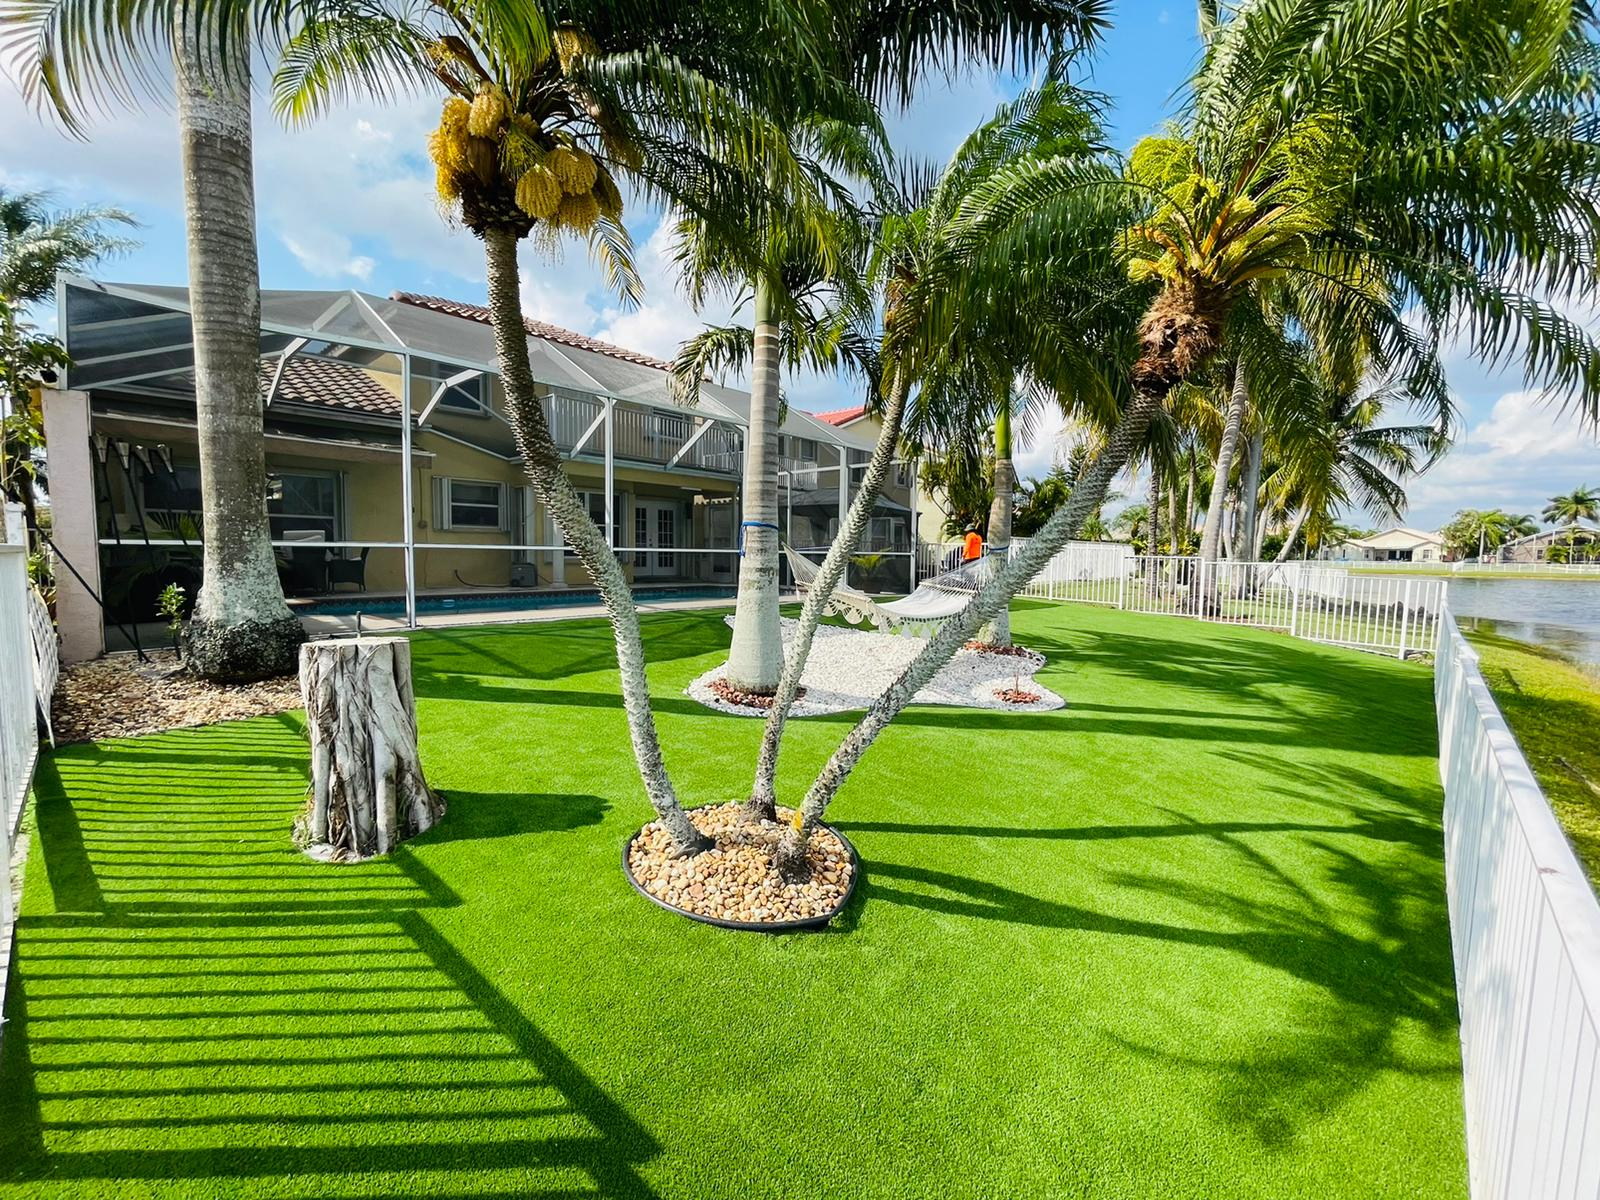 Artificial grass installation Miami